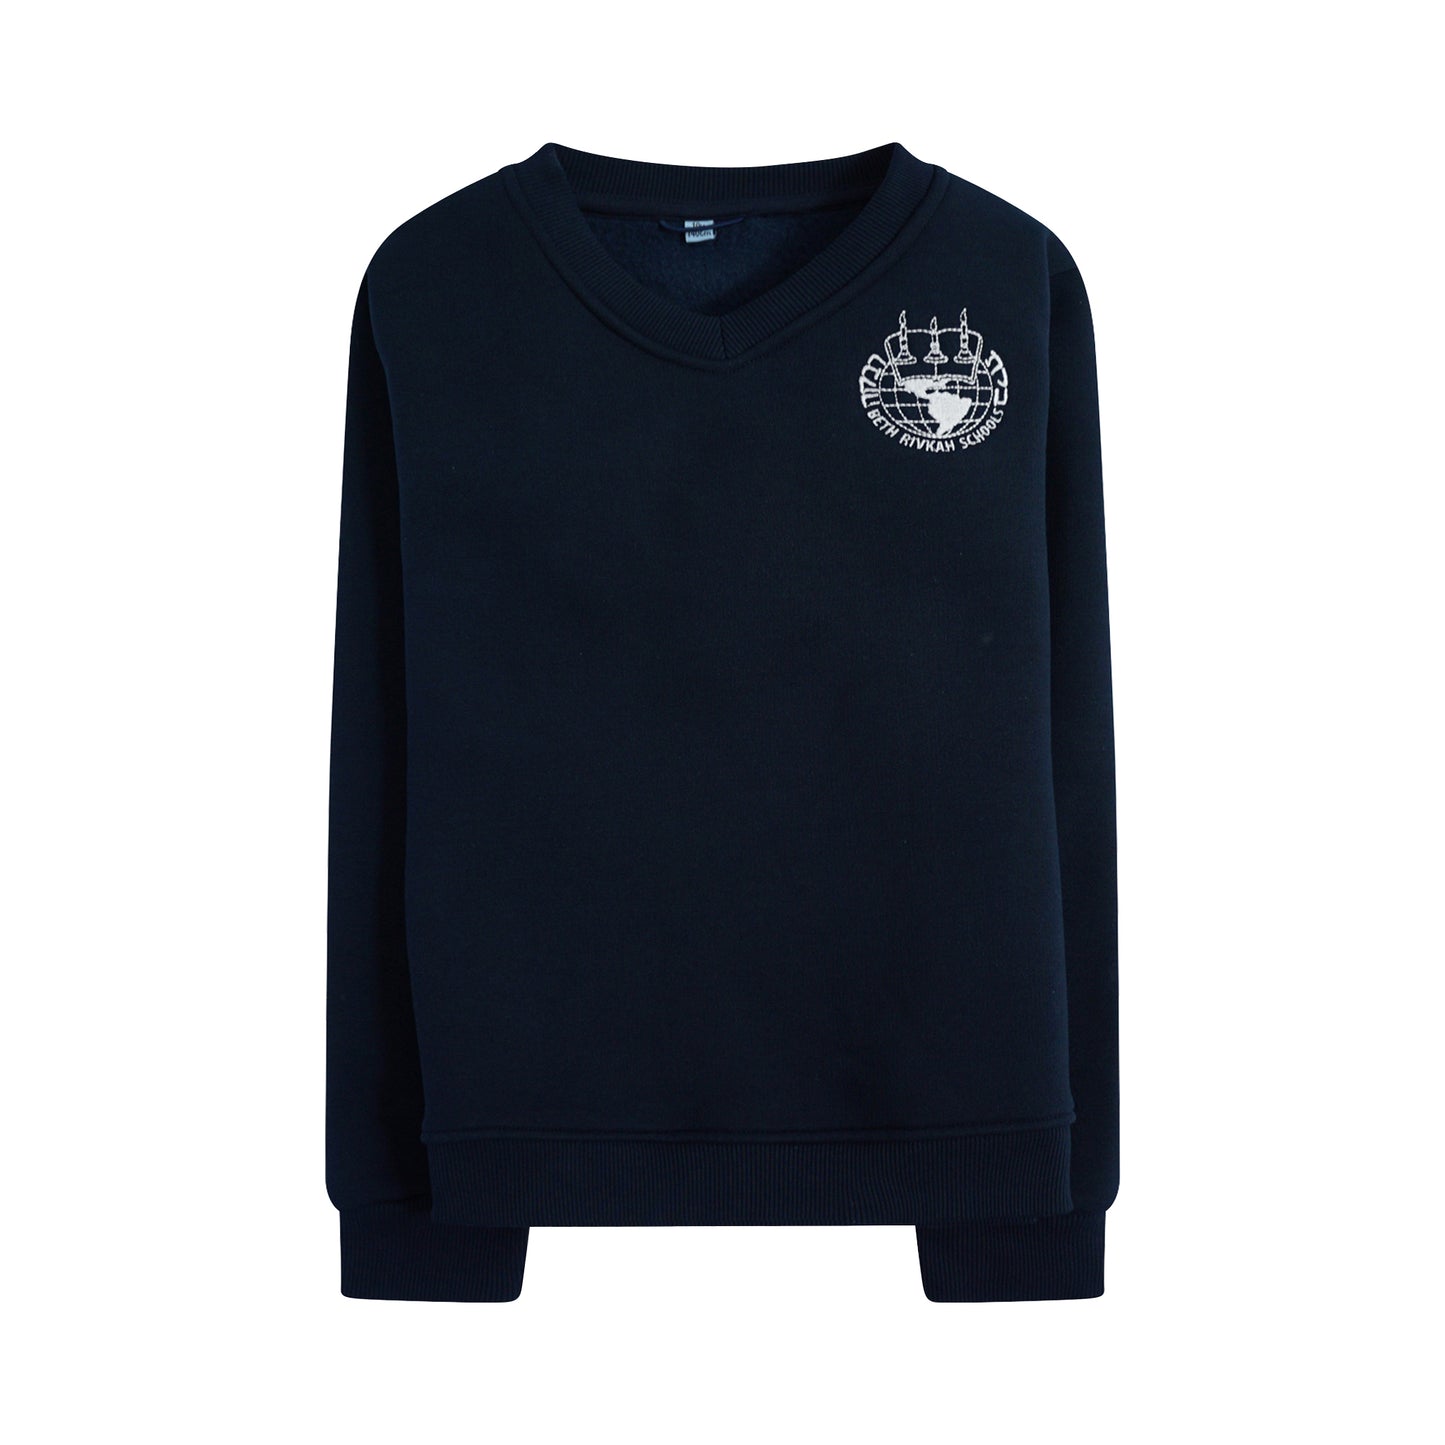 Navy Fleece Sweater